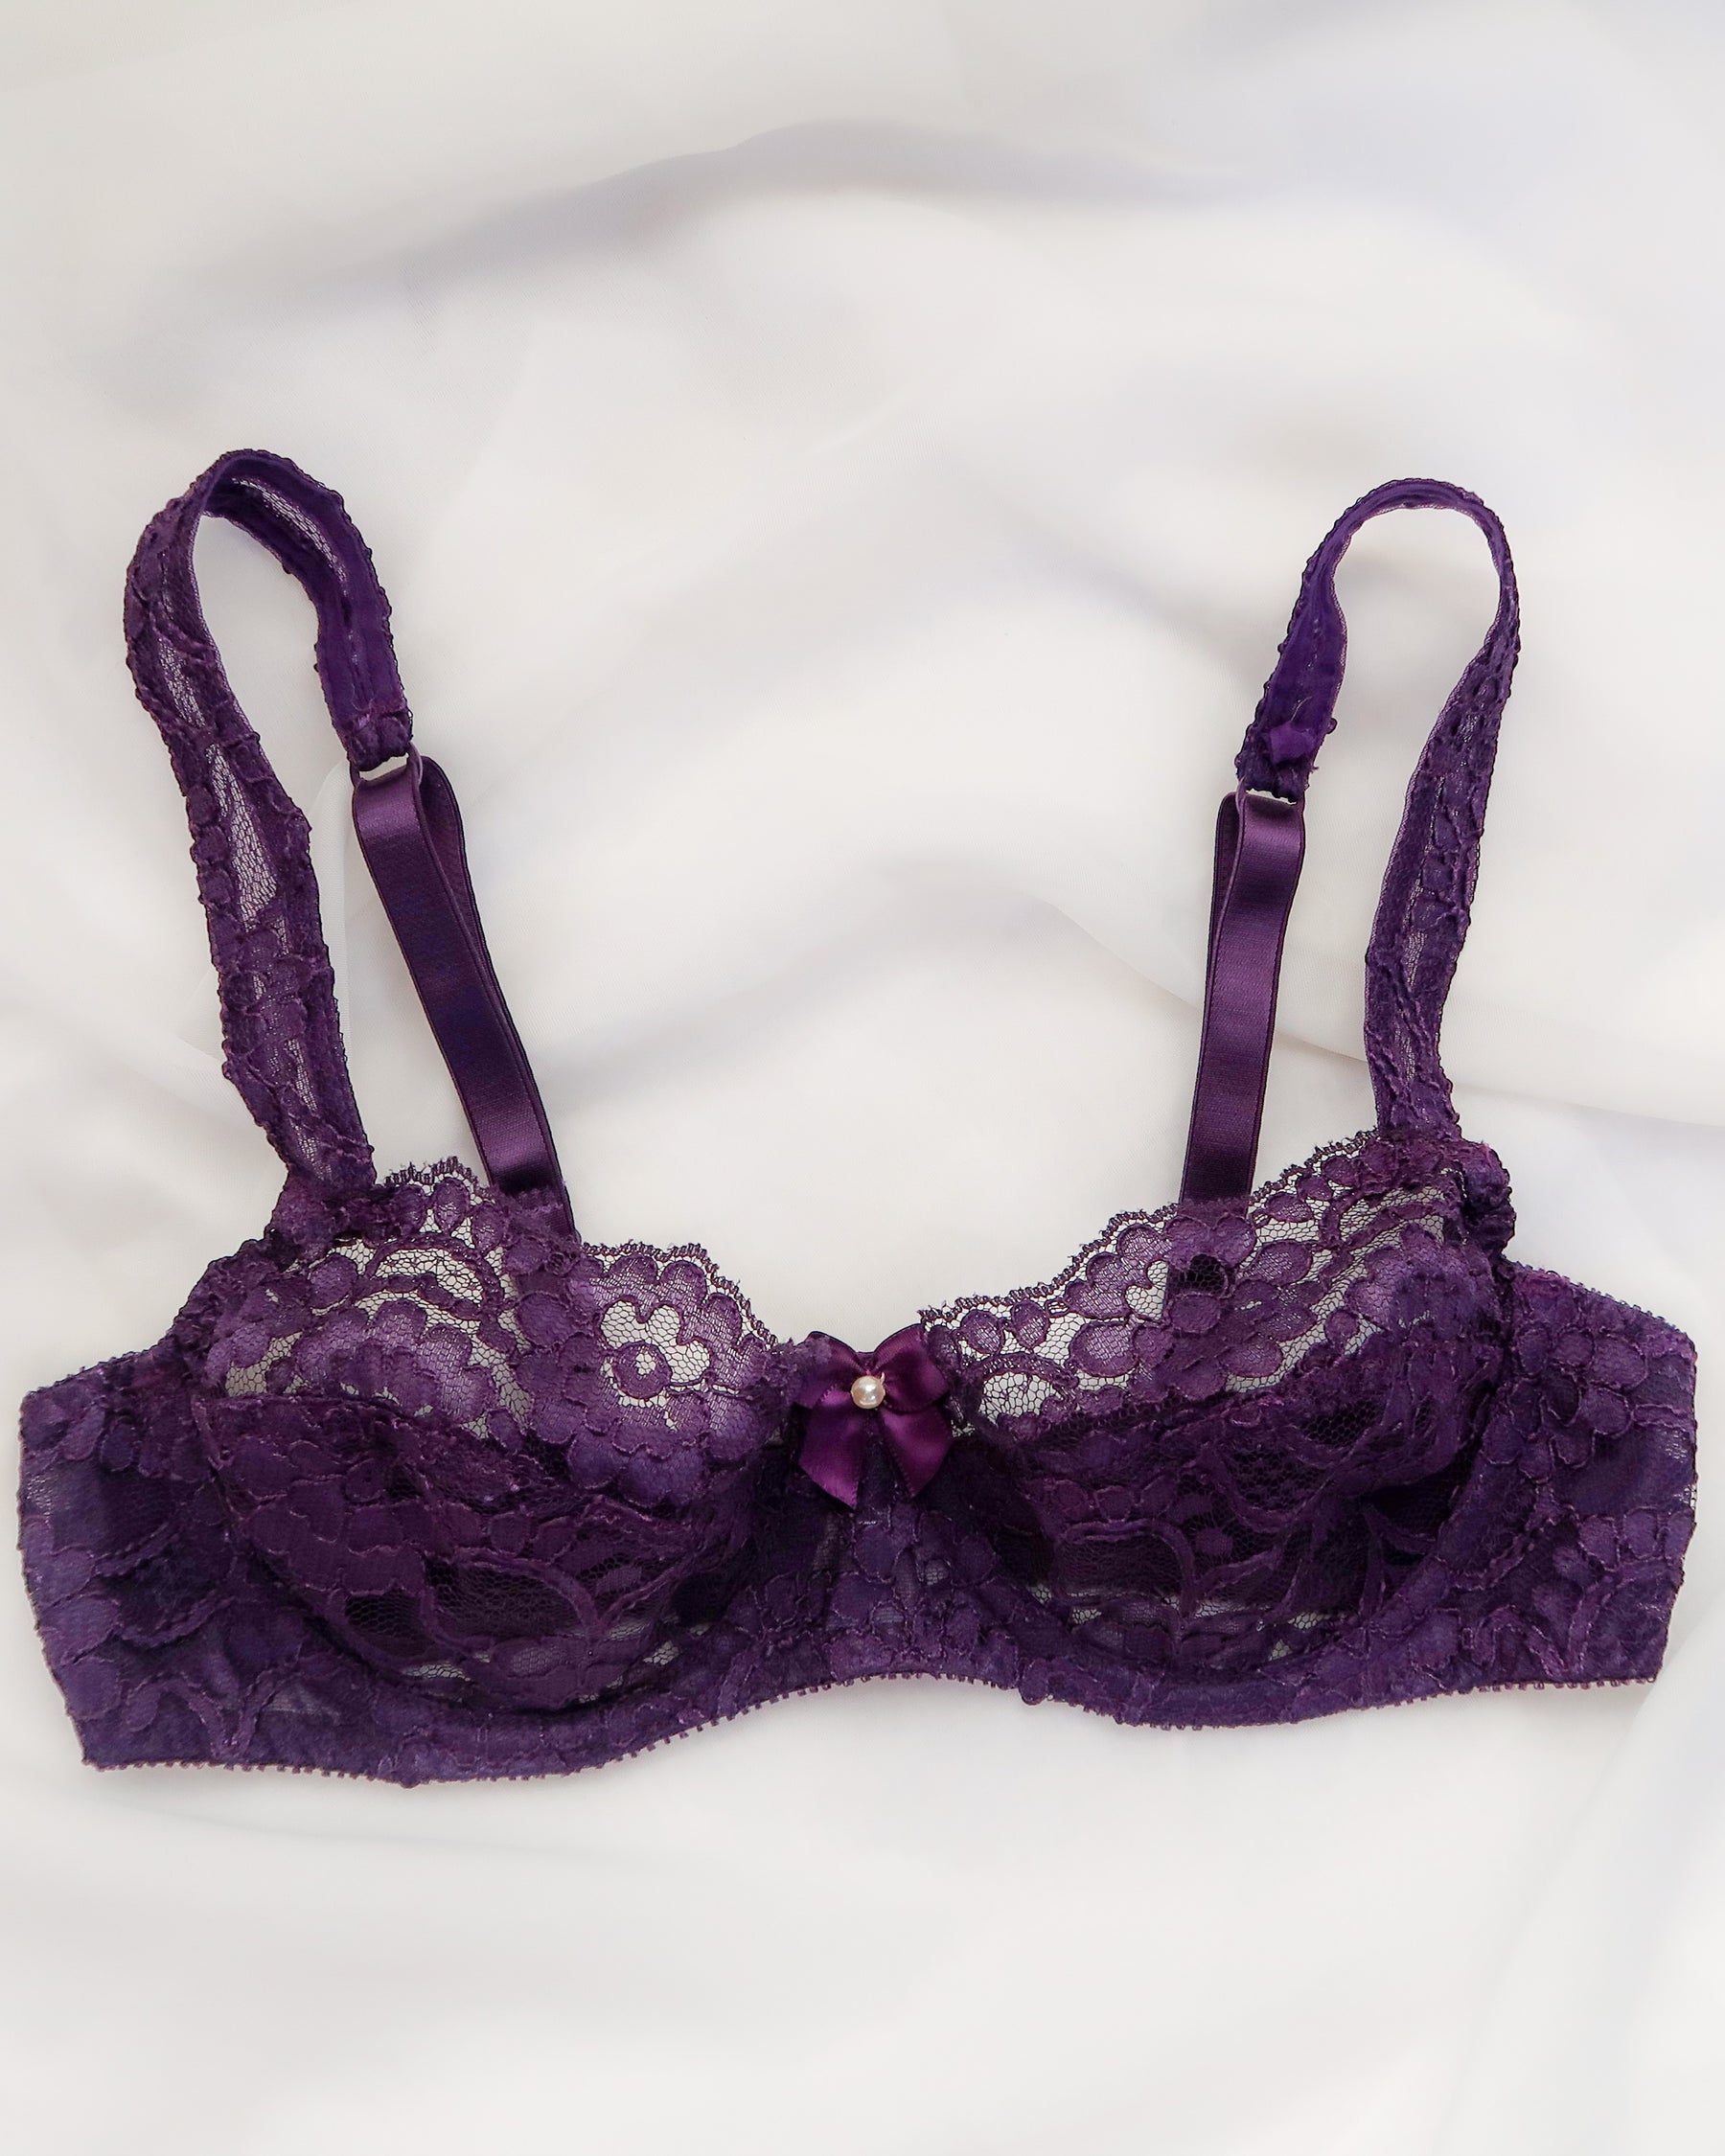 Regal Brassiere (34A) – Violette Wears